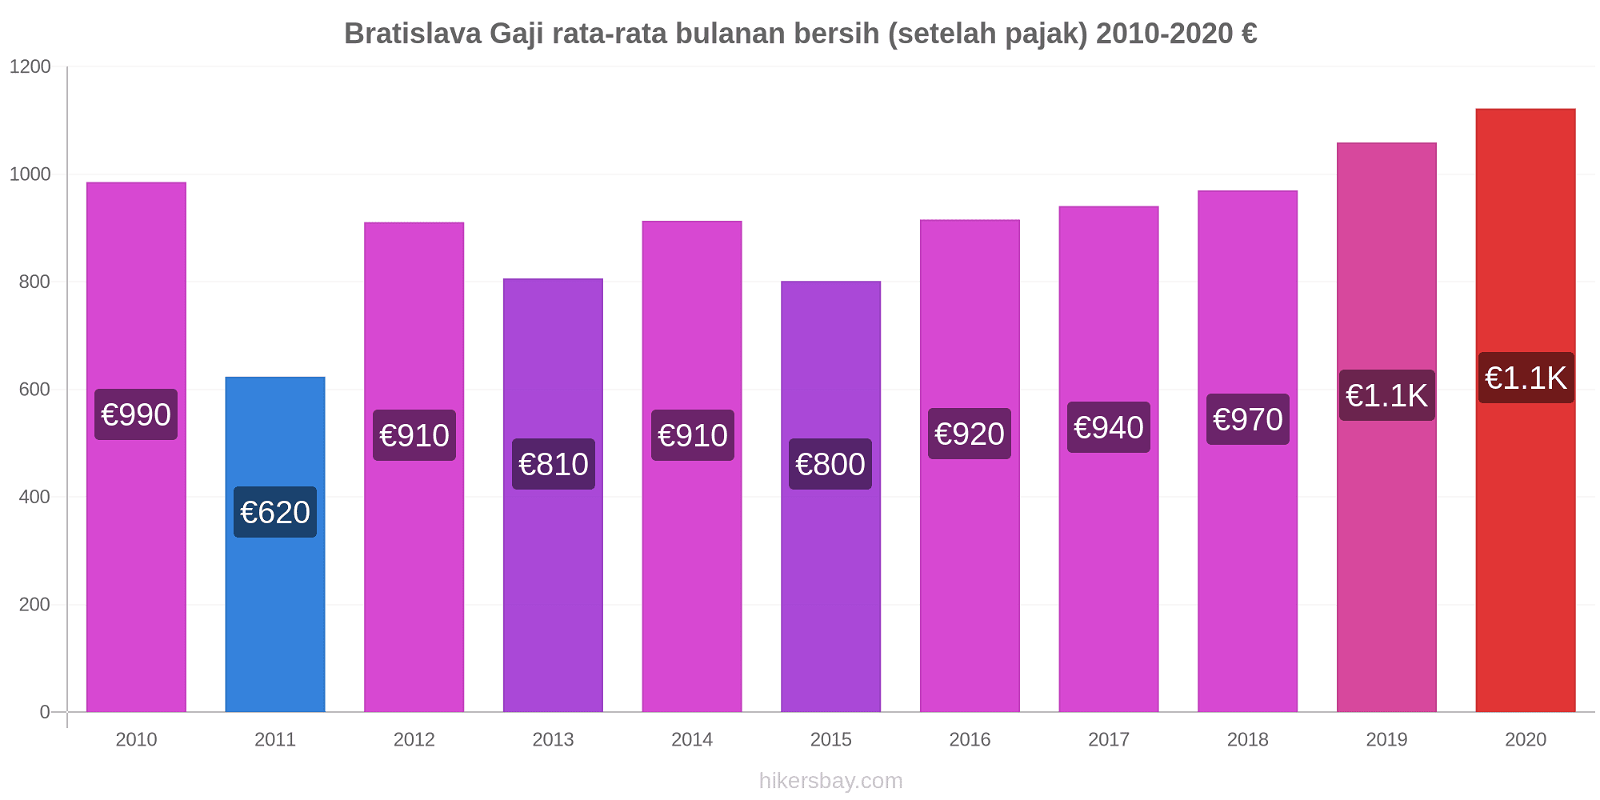 Bratislava perubahan harga Gaji rata-rata bulanan bersih (setelah pajak) hikersbay.com